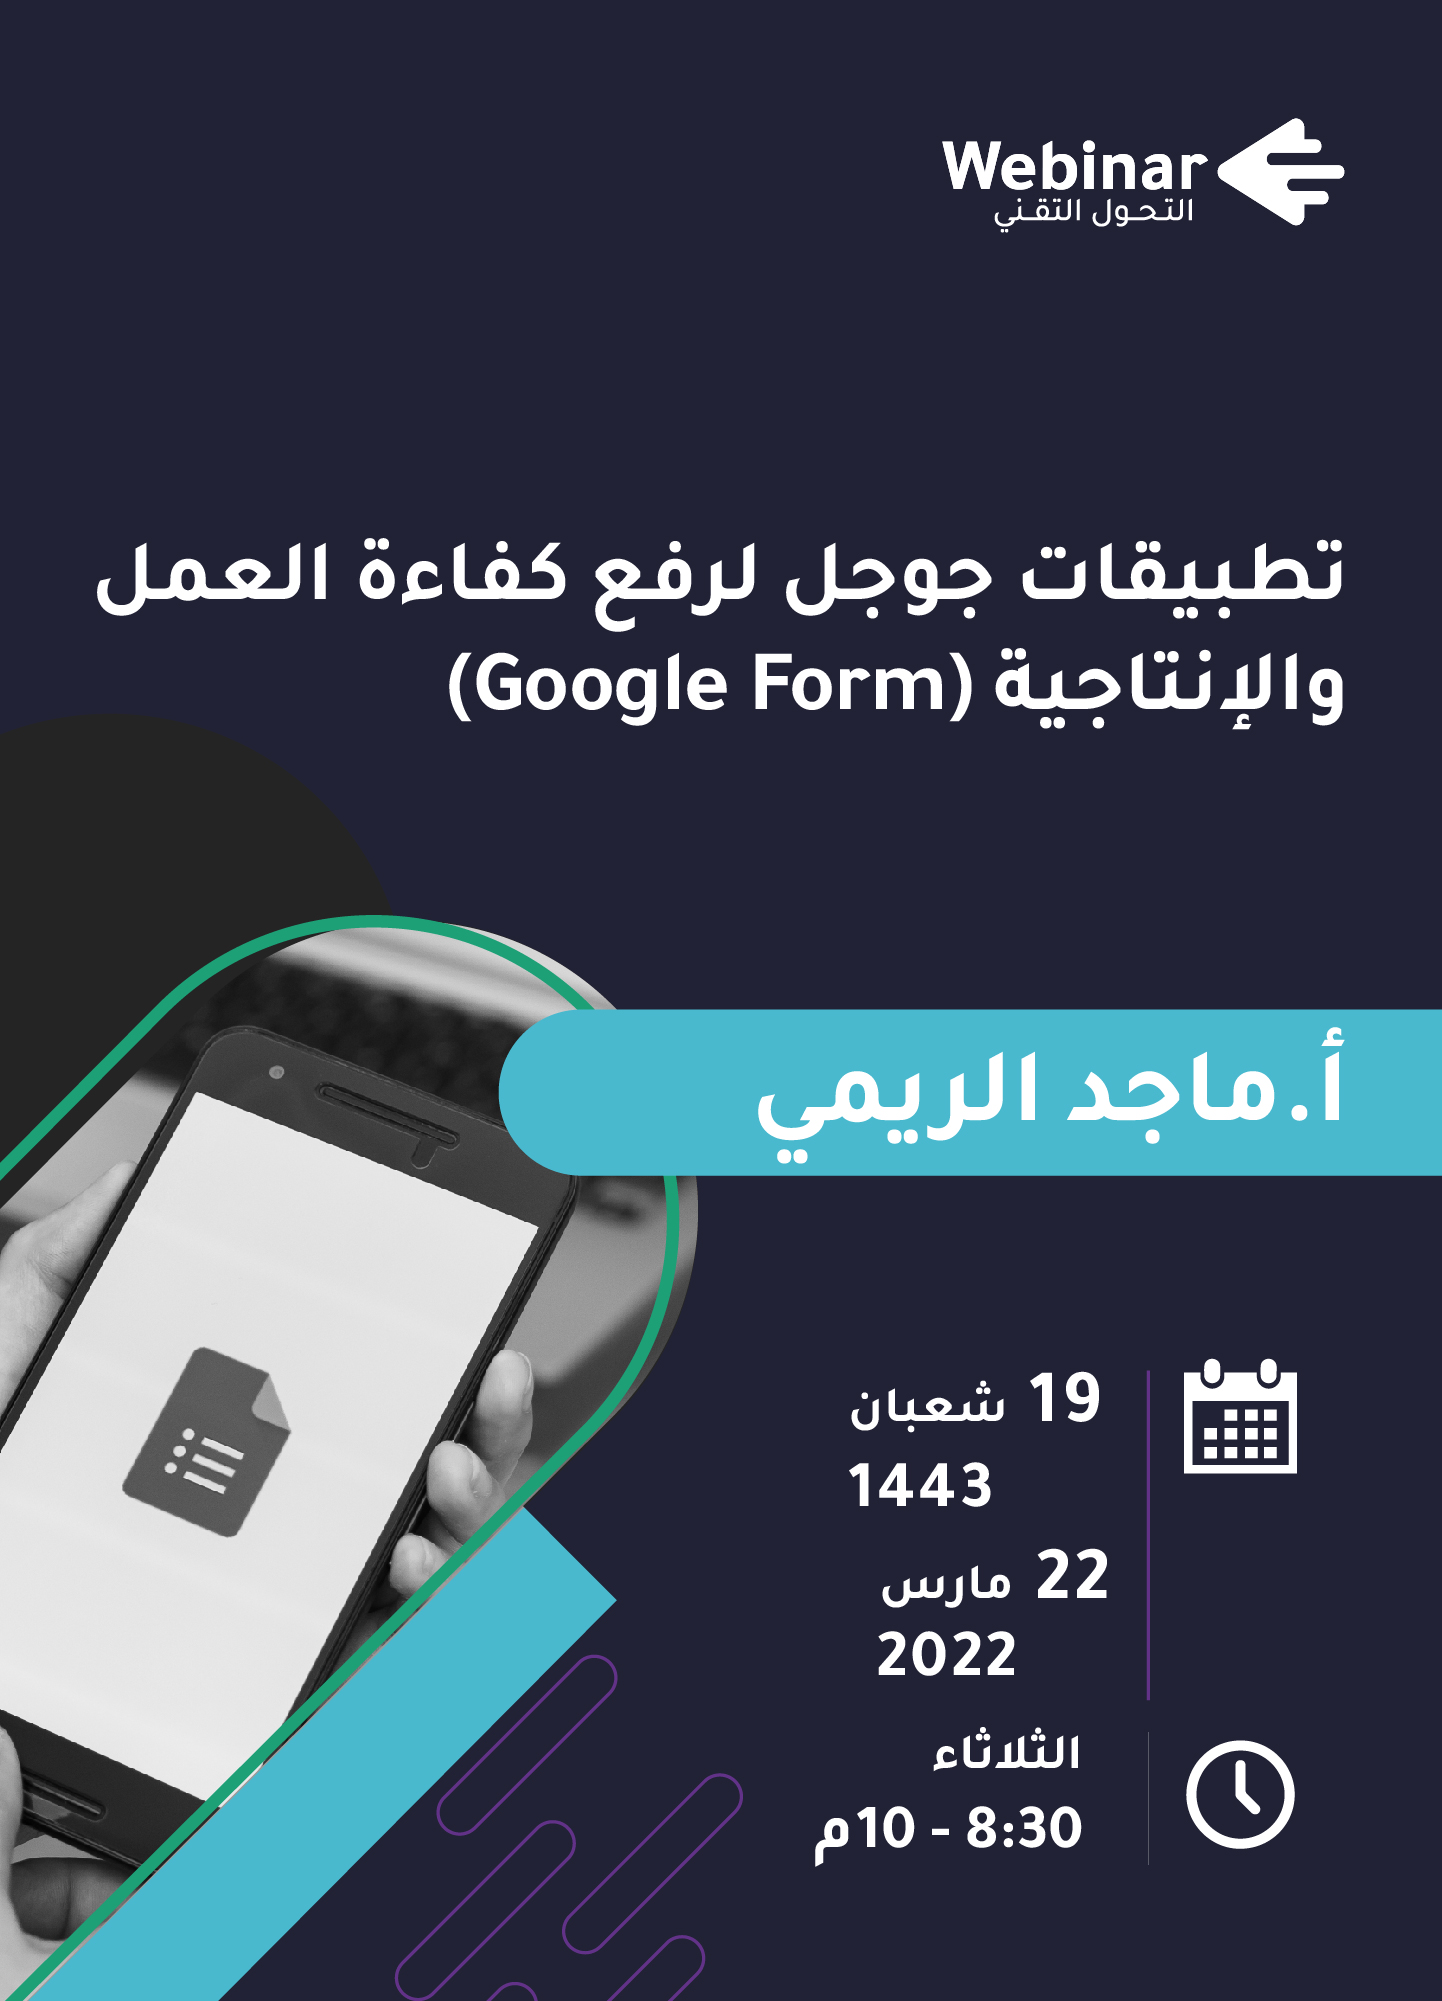 تطبيقات جوجل لرفع كفاءة العمل والإنتاجية ( Google Form)